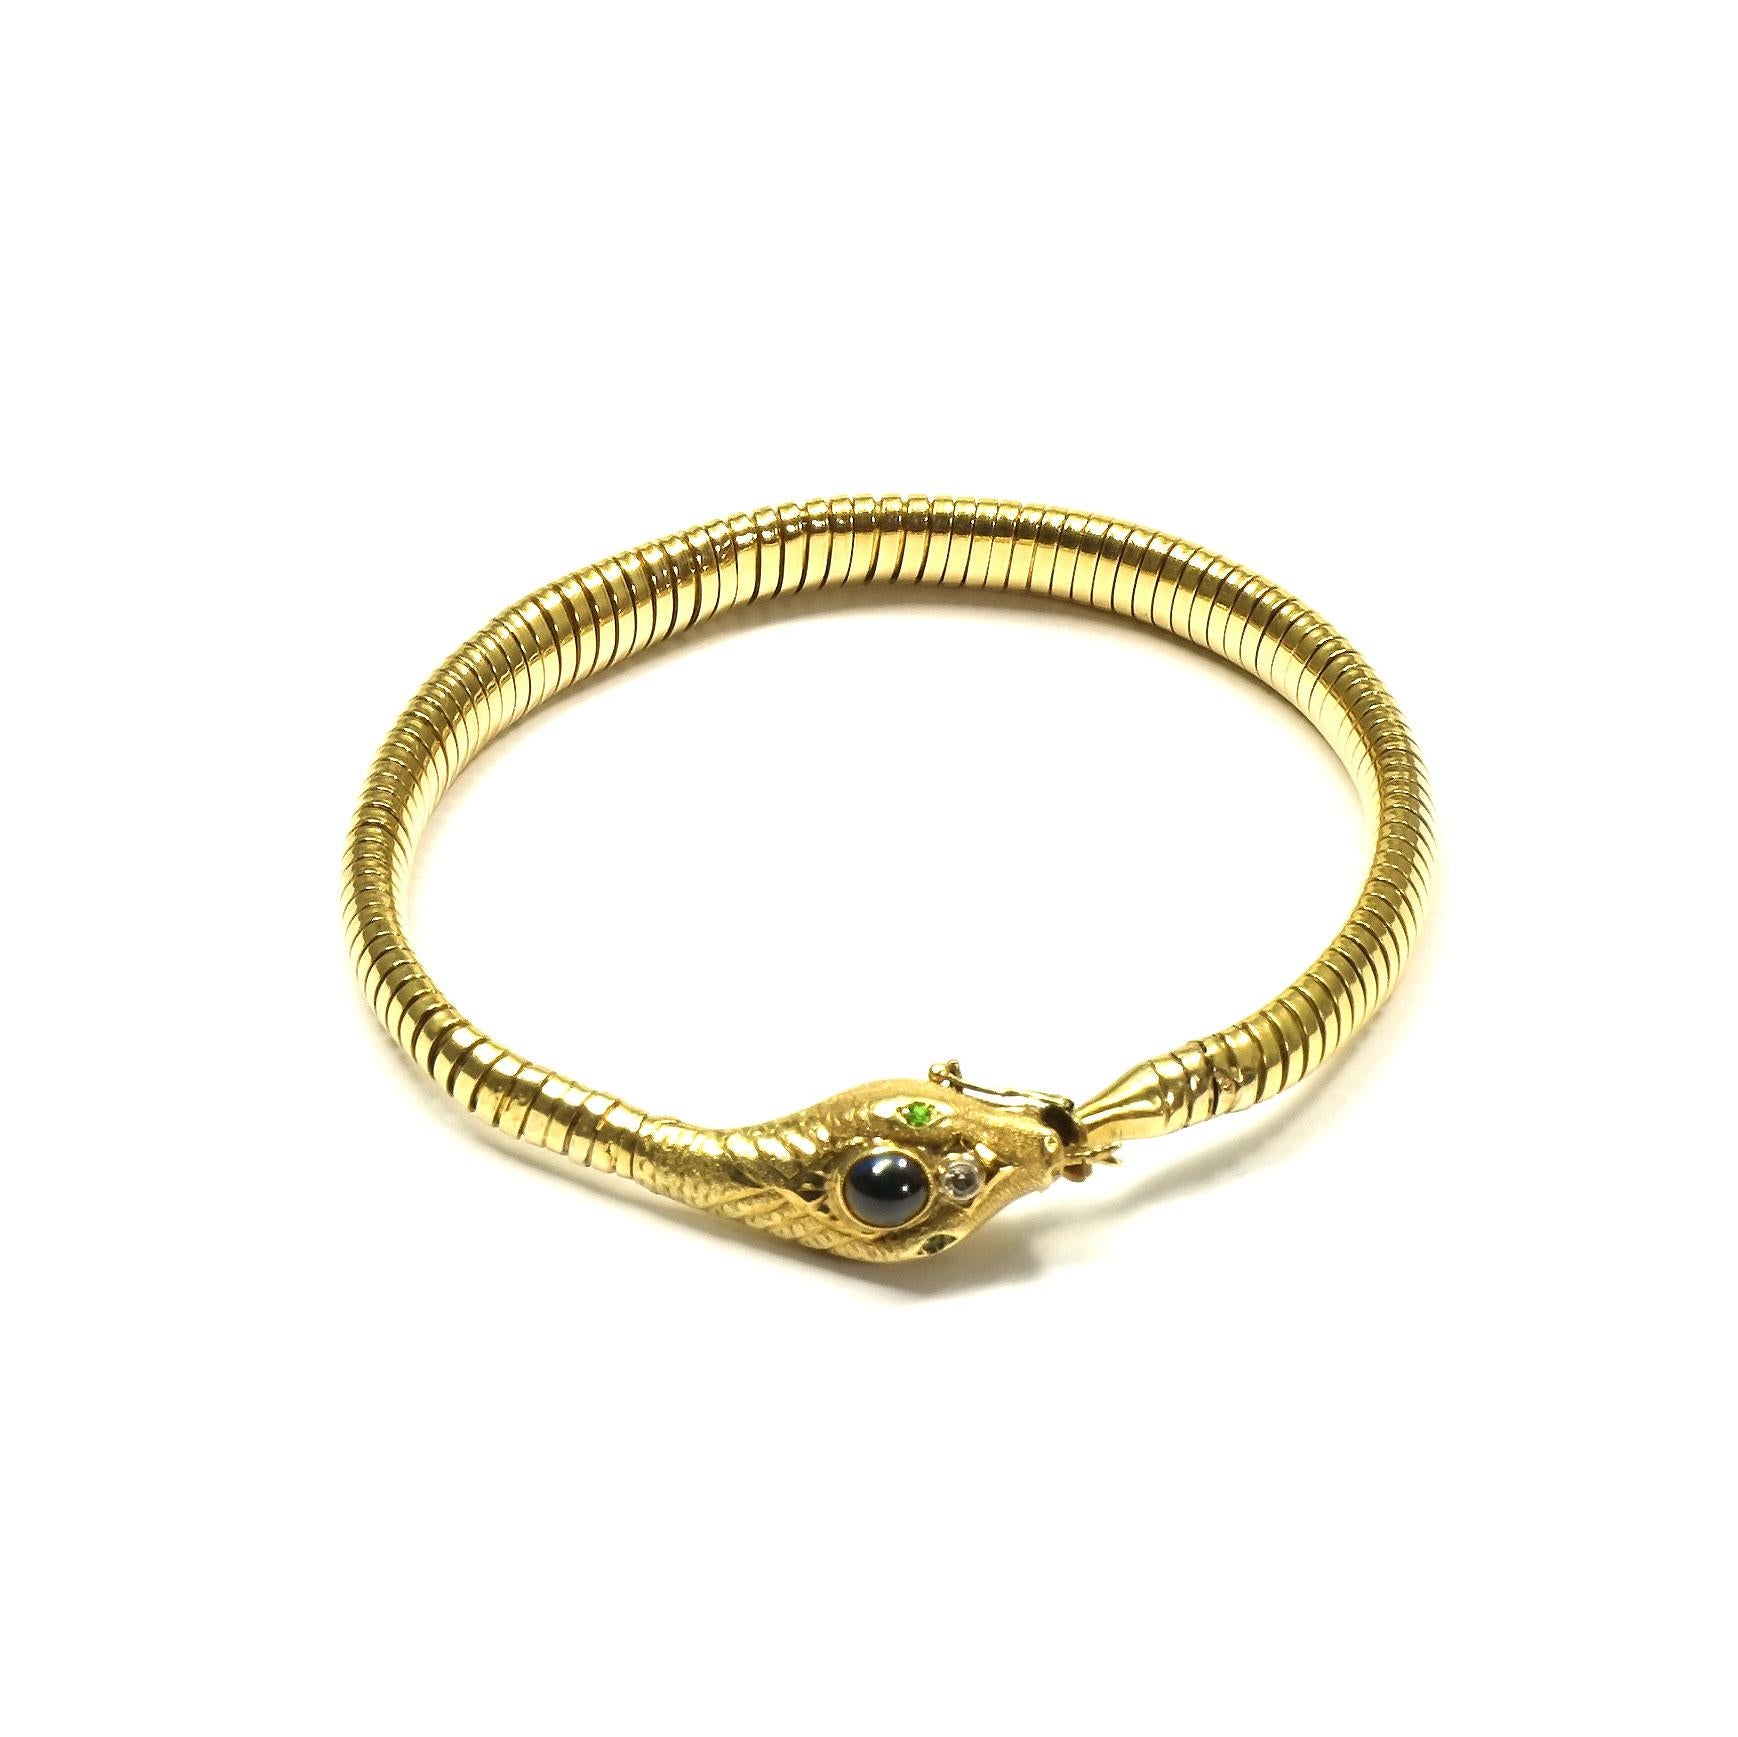 Antikes Saphir-Diamant 14K Gold Schlangen-Tubogas-Armband, um 1925/30

Dekoratives Tubogas-Goldarmband in Form einer Schlange. Der detailreiche Kopf mit feinen Gravuren ist mit einem ovalen Saphir-Cabochon und einem glänzenden Diamanten besetzt, die